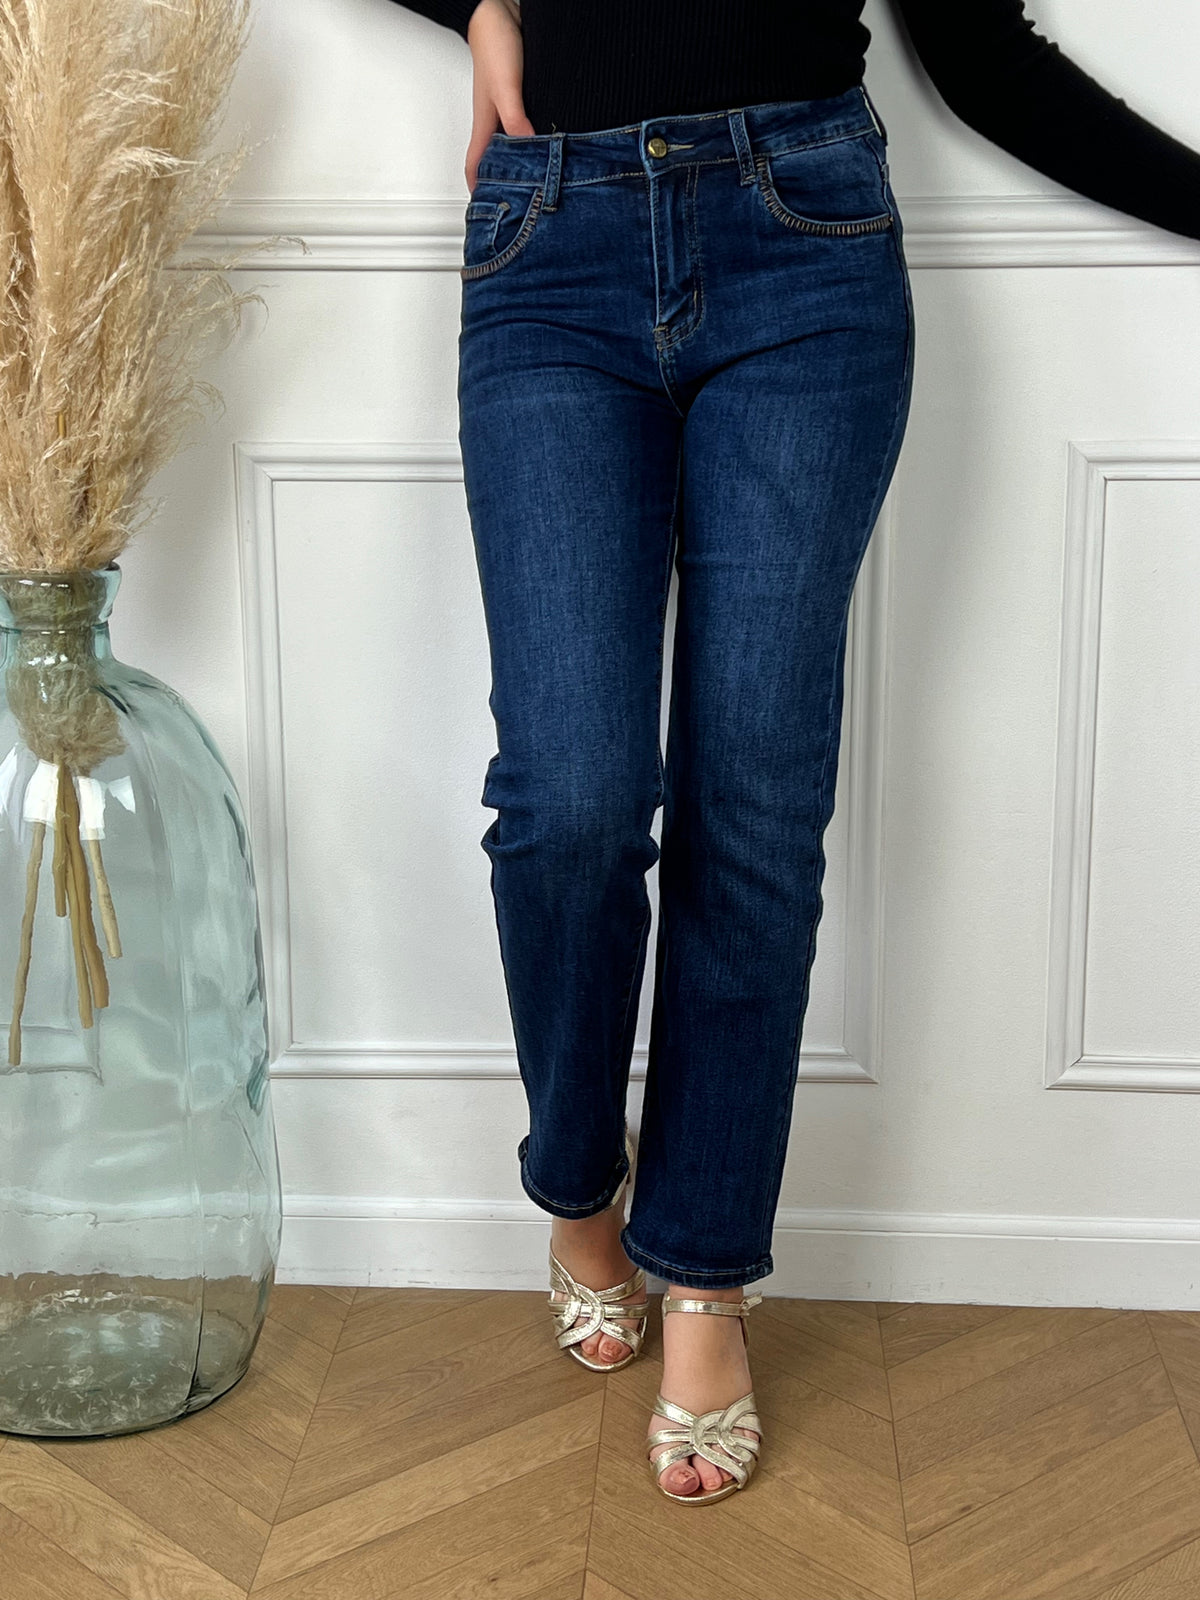 La jean bleu foncé incarne l'élégance intemporelle et la polyvalence. Sa teinte profonde et sa texture robuste offrent un style décontracté-chic adapté à toutes les occasions. Confortable et durable, c'est un essentiel de garde-robe pour une allure toujours impeccable.